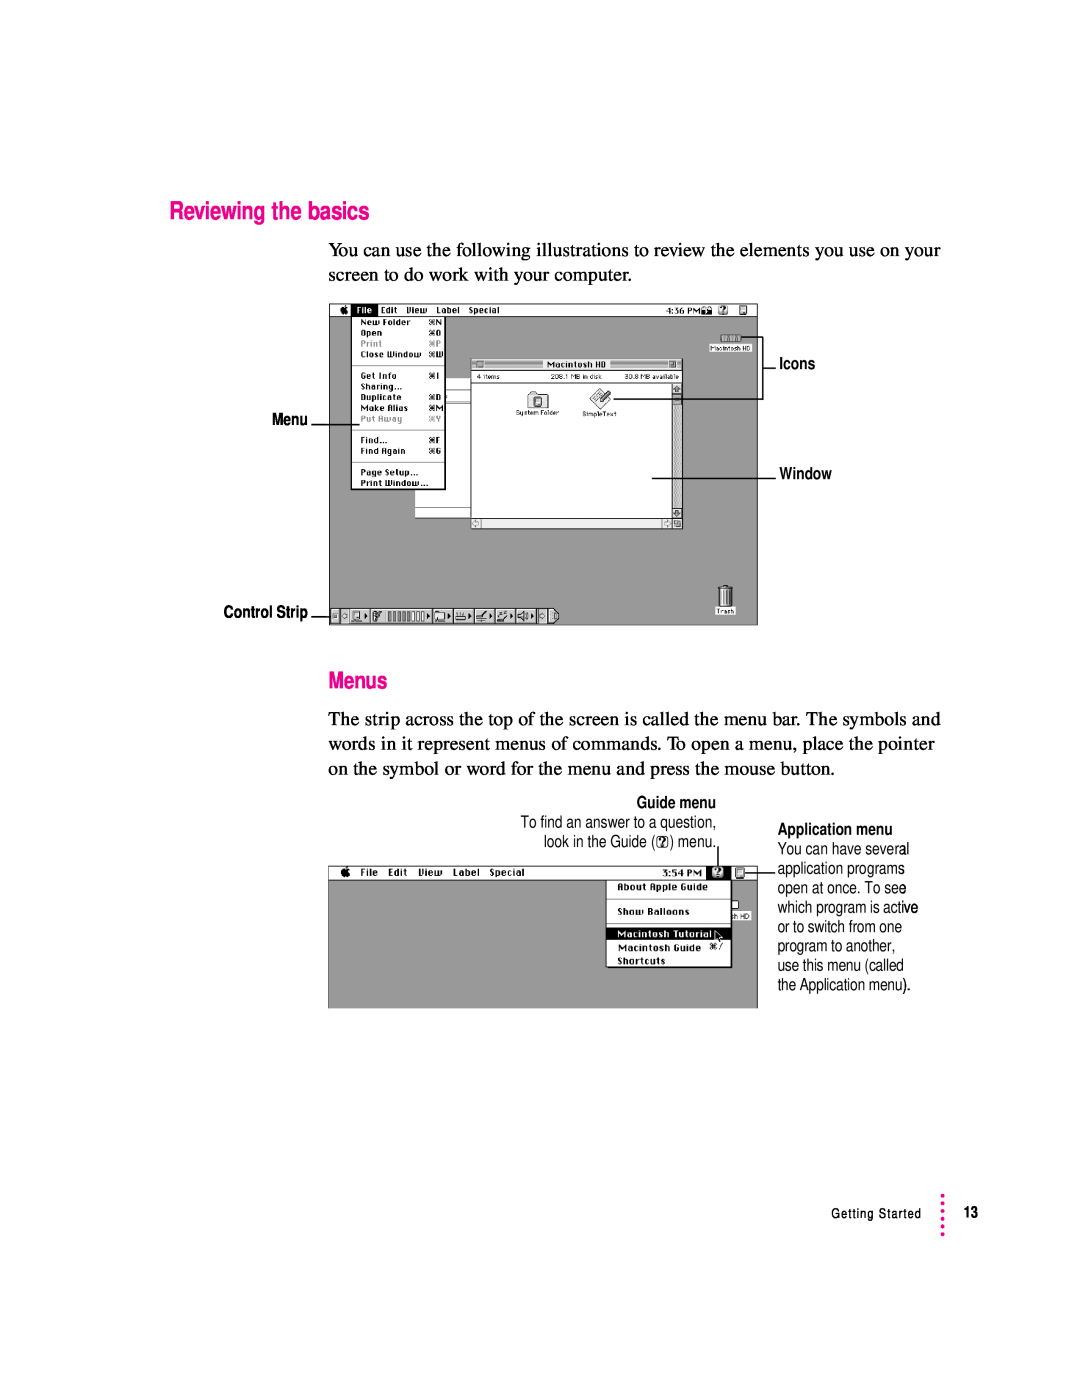 Apple 2300 Series manual Reviewing the basics, Menus 